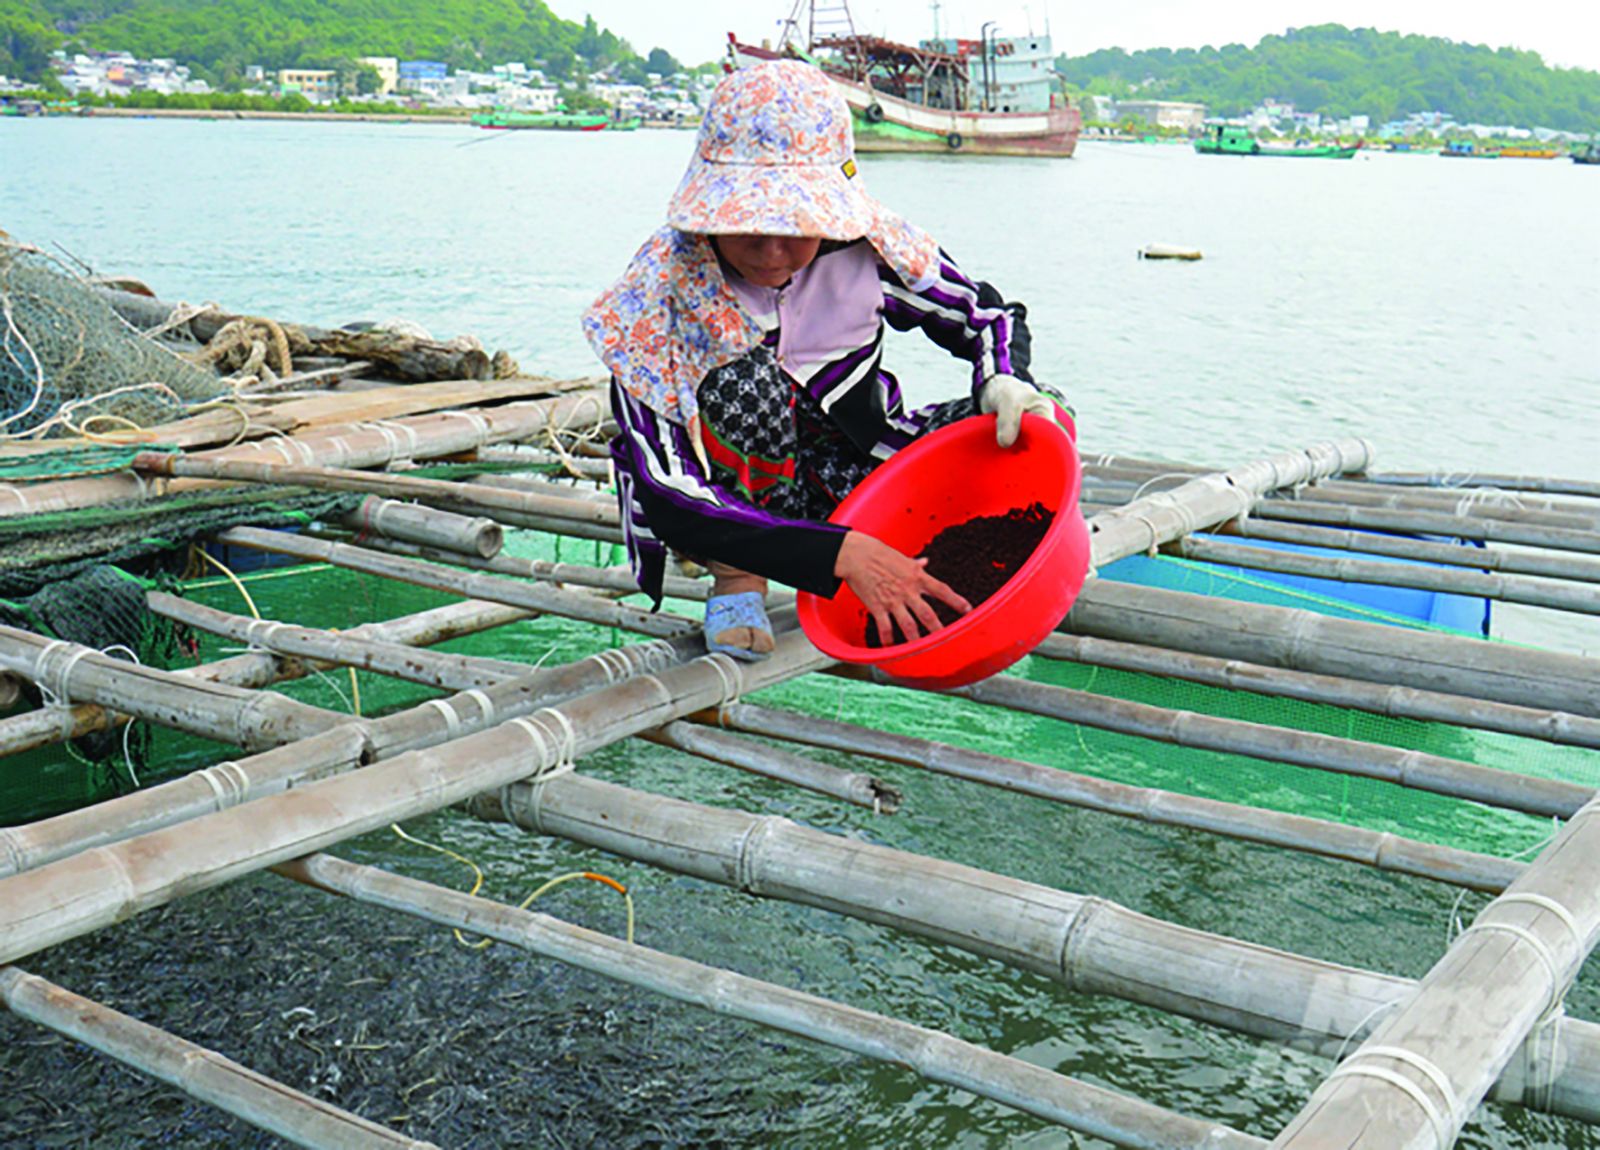  Kiên Giang tăng cường hoạt động nuôi thủy sản nước mặn, lợ, ngọt để bổ sung sản lượng, đồng thời tái cấu trúc nuôi thuỷ sản theo hướng phát triển bền vững. 